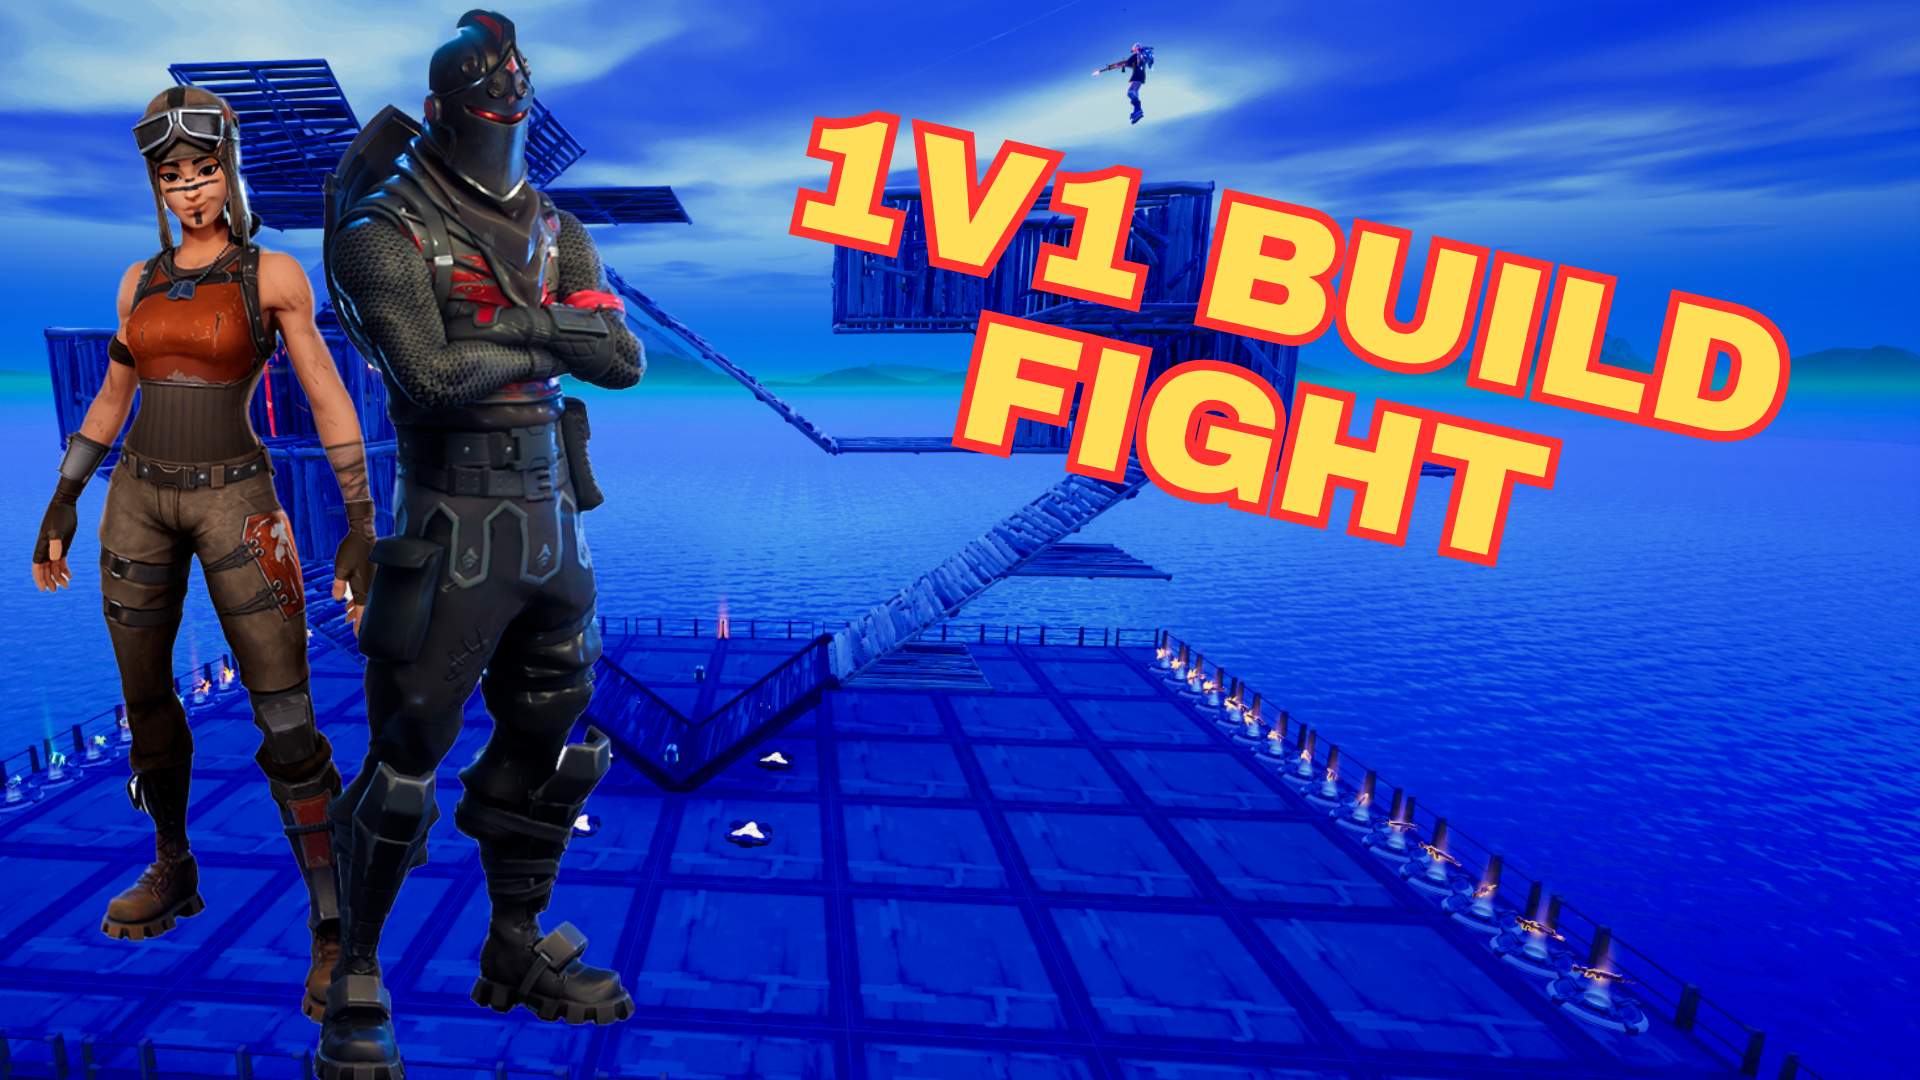 1v1 Build Fight